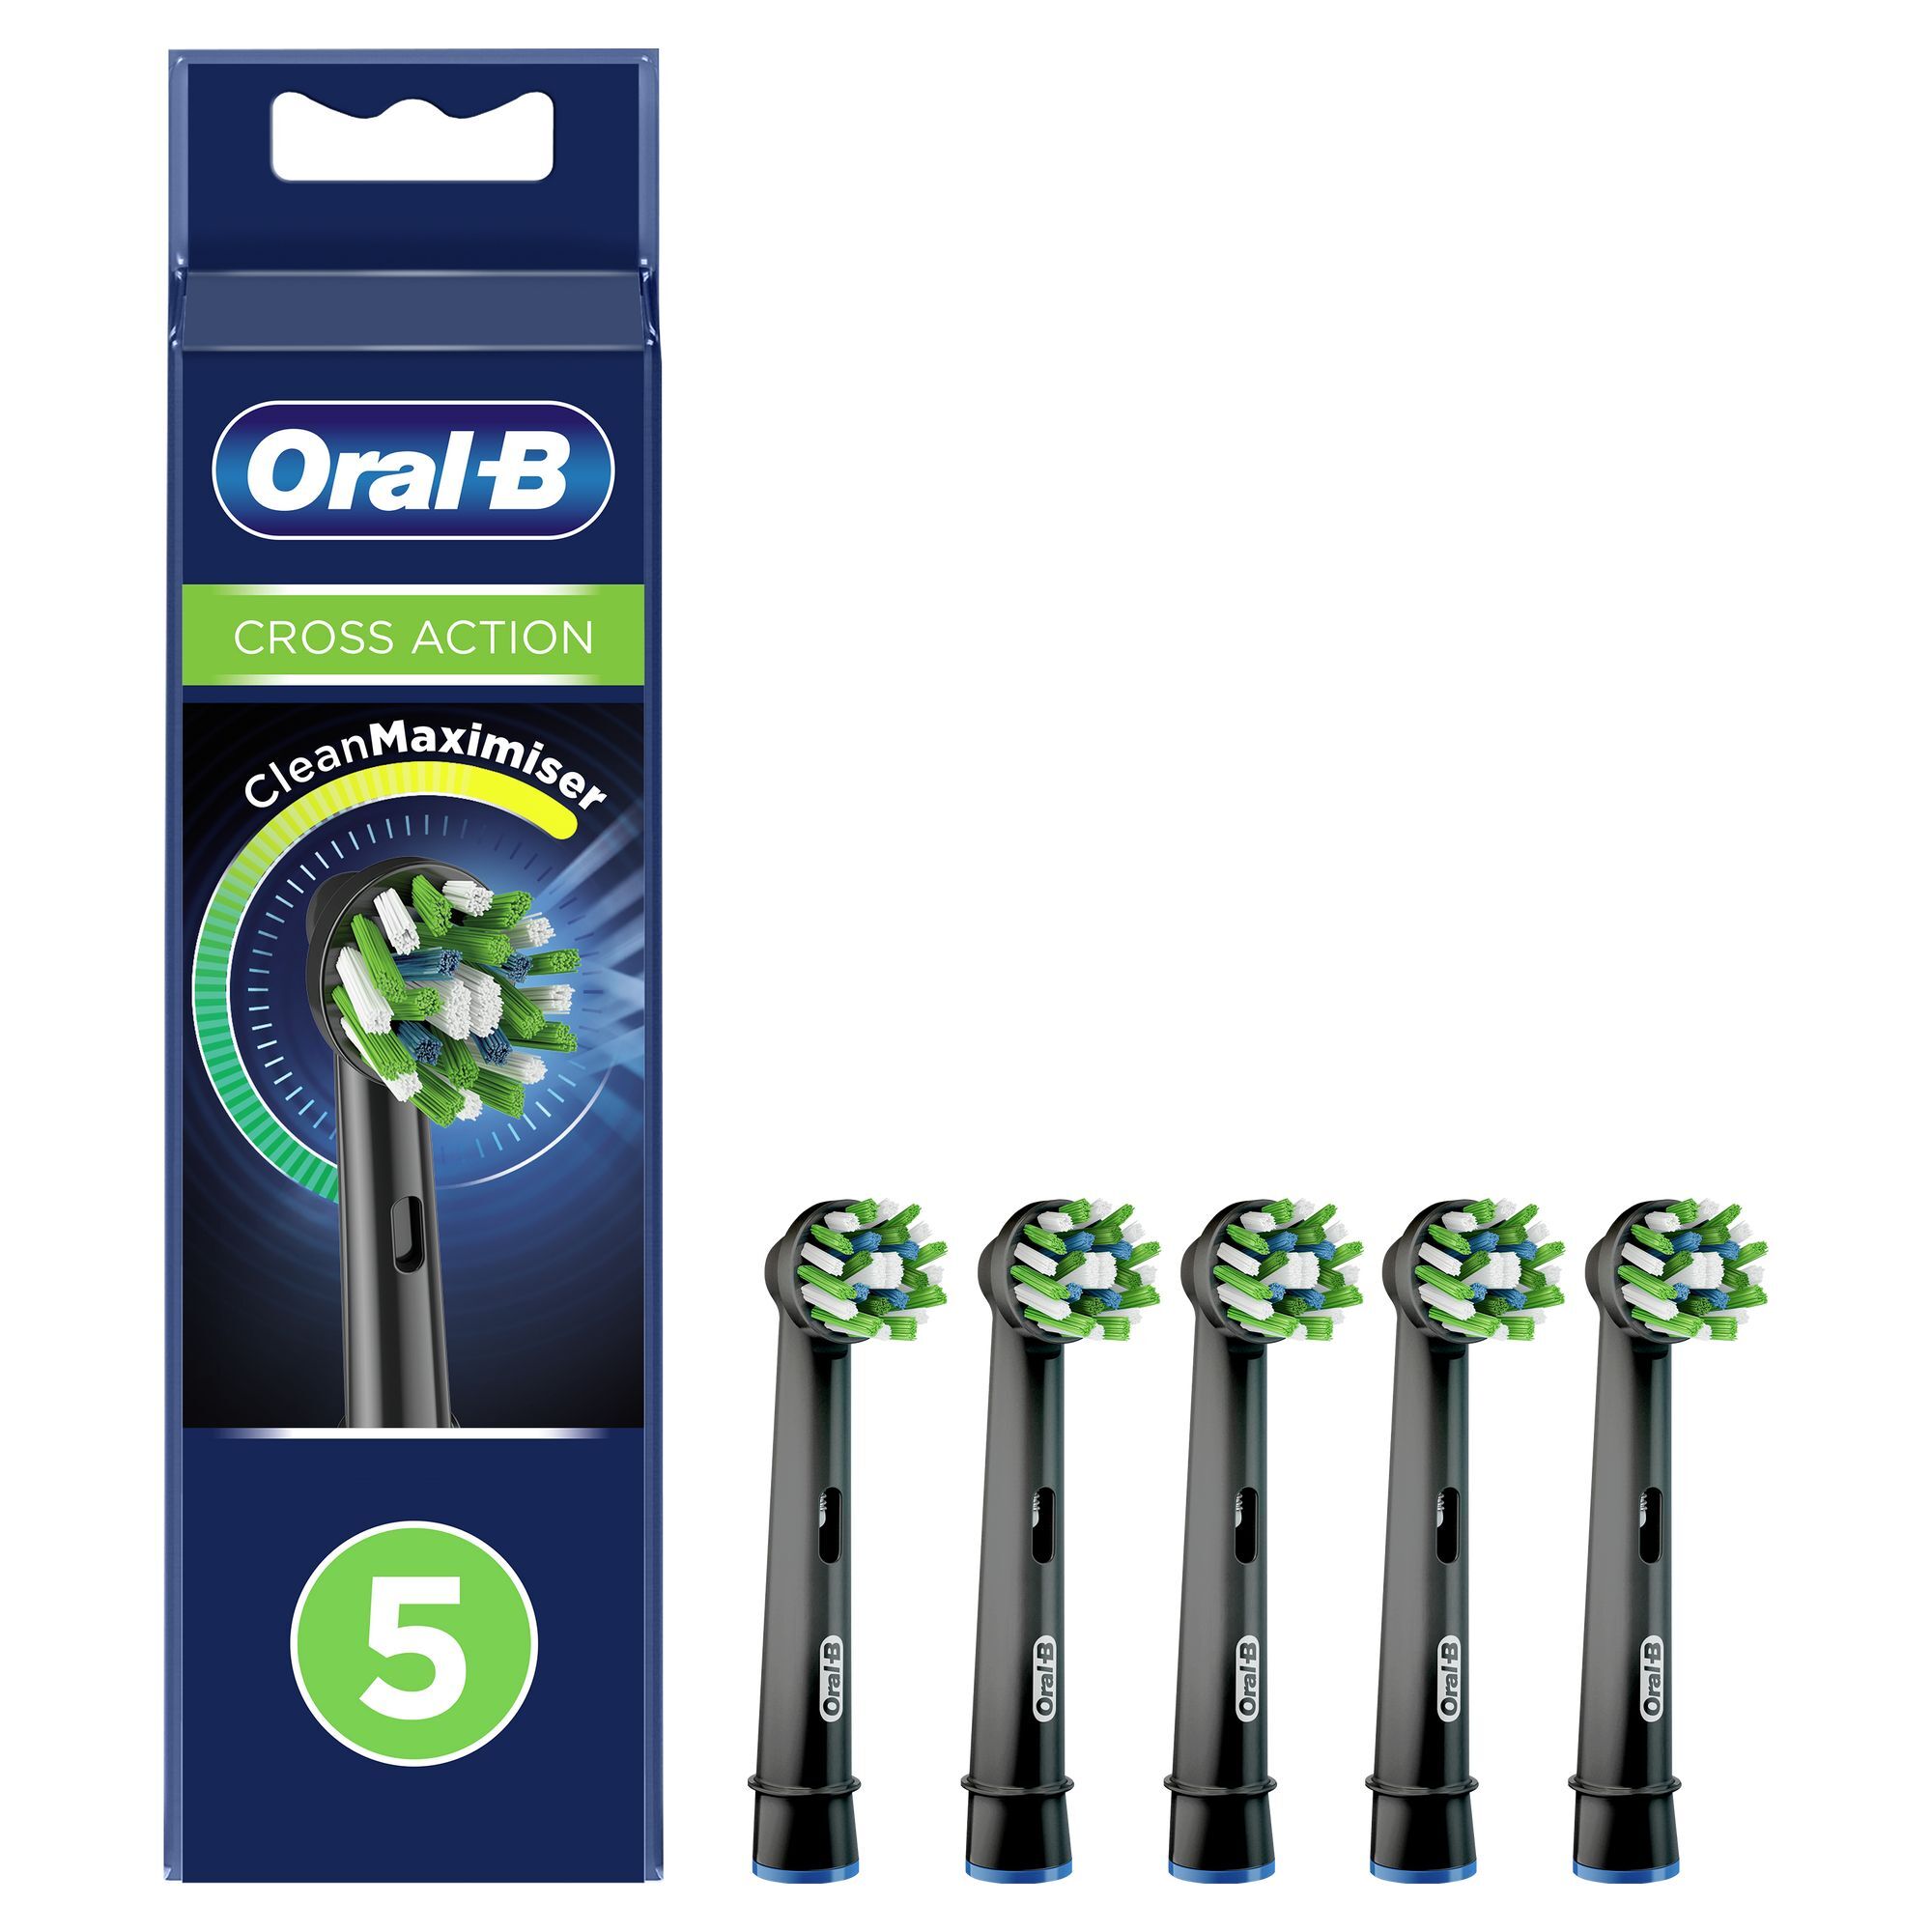 Oral-B CrossAction Opzetborstel Black Edition Met CleanMaximiser-technologie, Verpakking Van 5 Stuks